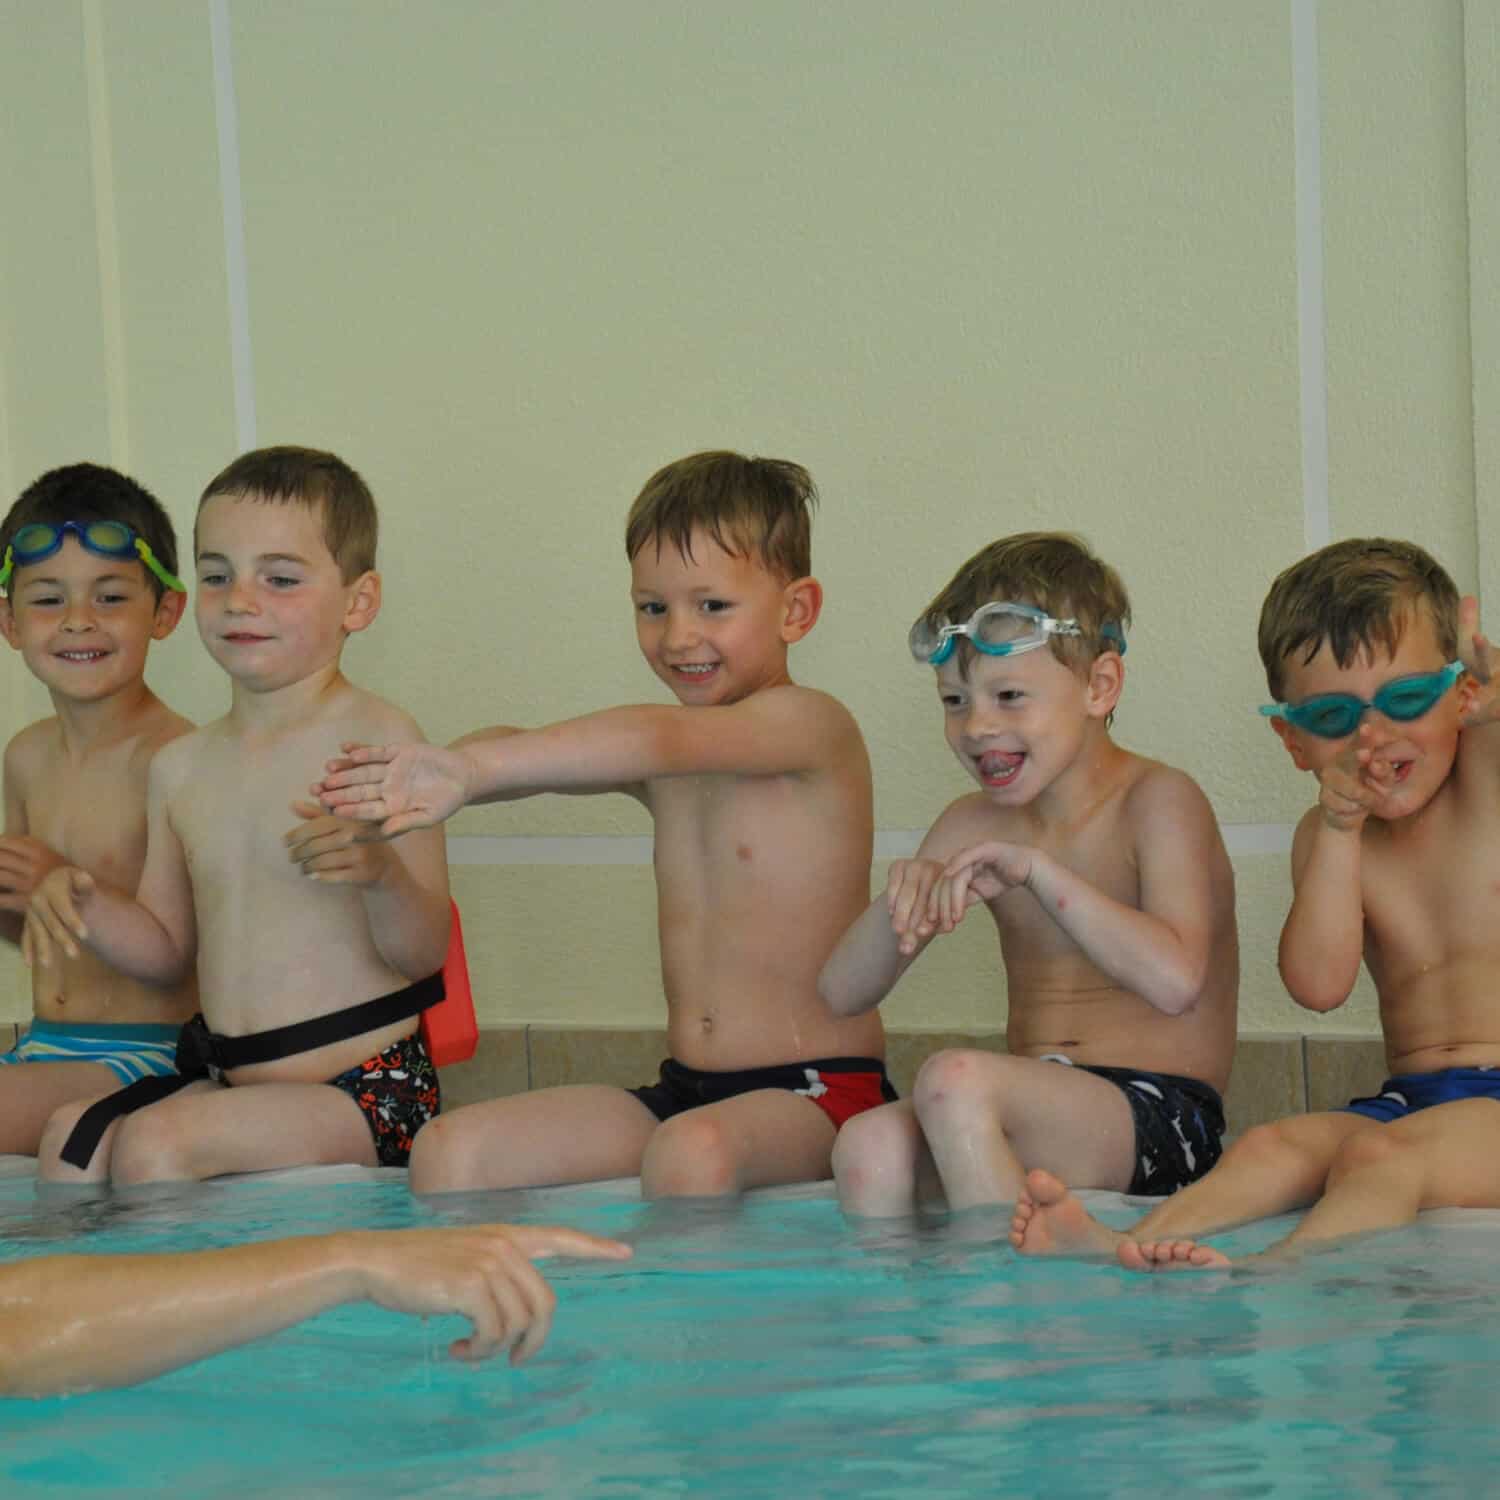 Auf dem Bild sind fünf Kinder bei einem Anfänger-Schwimmkurs zusehen. Sie sitzen am Beckenrand und machen die Übung nach, die ihnen vom Schwimmlehrer vorgezeigt wird.